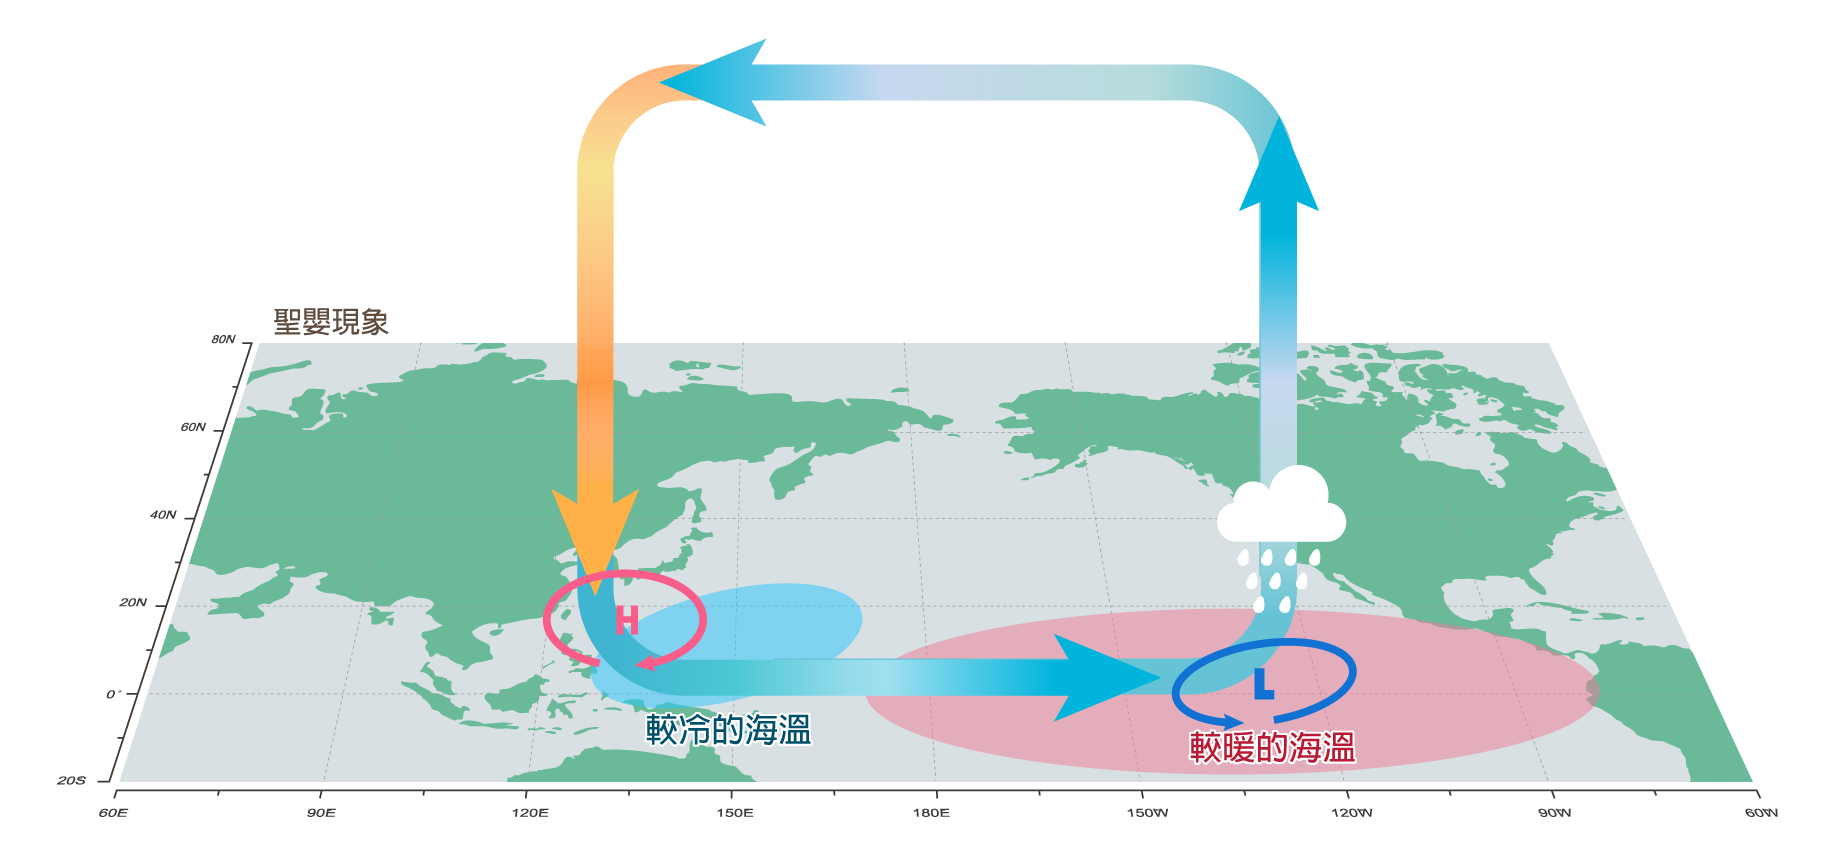 正常氣候下，太平洋東部的氣壓場高於西部，吹東風。但聖嬰現象期間，東風將減弱或轉為西風，導致原來向西流之東太平洋表層洋流改向東流，海水逐漸受熱增溫後，聚於東太平洋海域，熱帶太平洋表水溫東高西低。